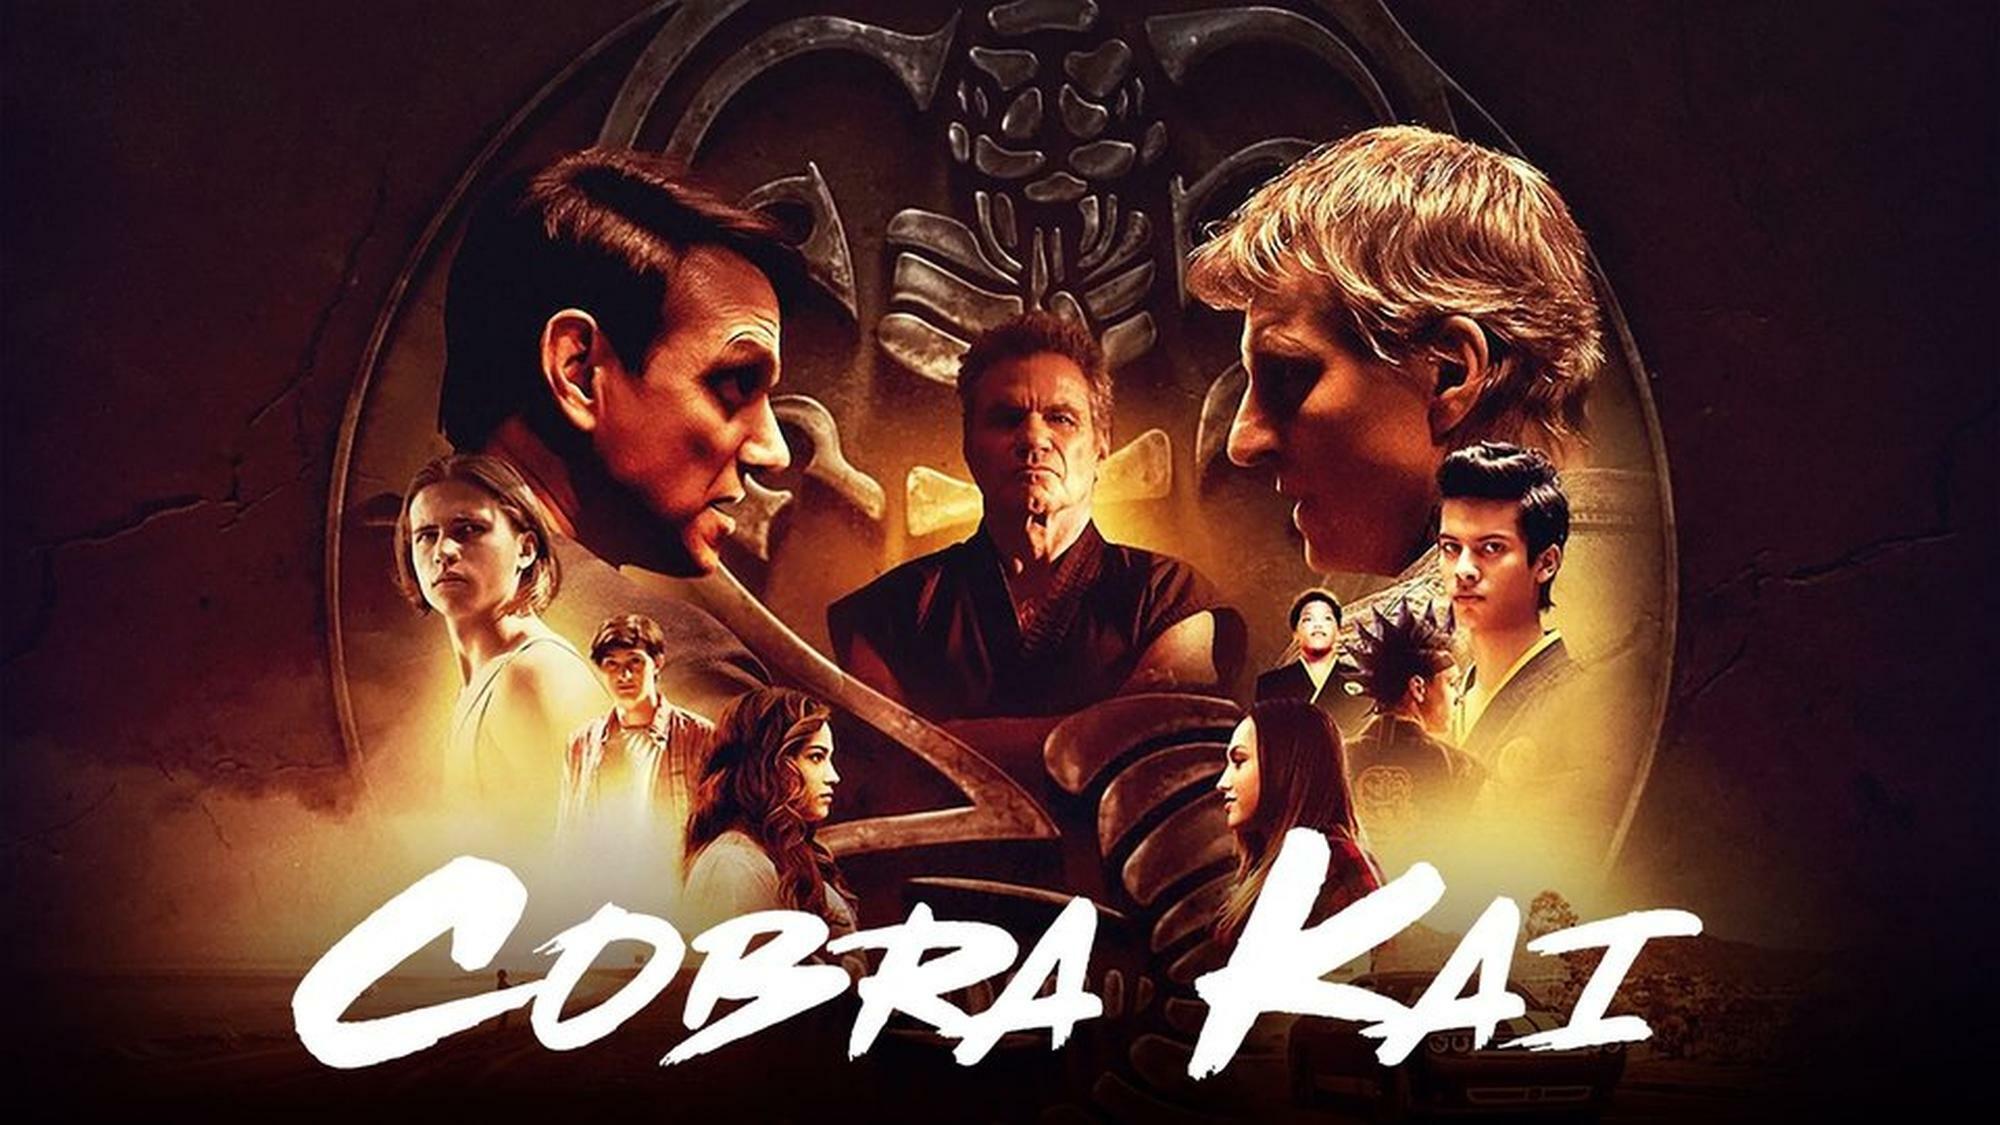 Cobra Kai Staffel 5 bringt wieder Nervenkitzel auf Netflix Titel